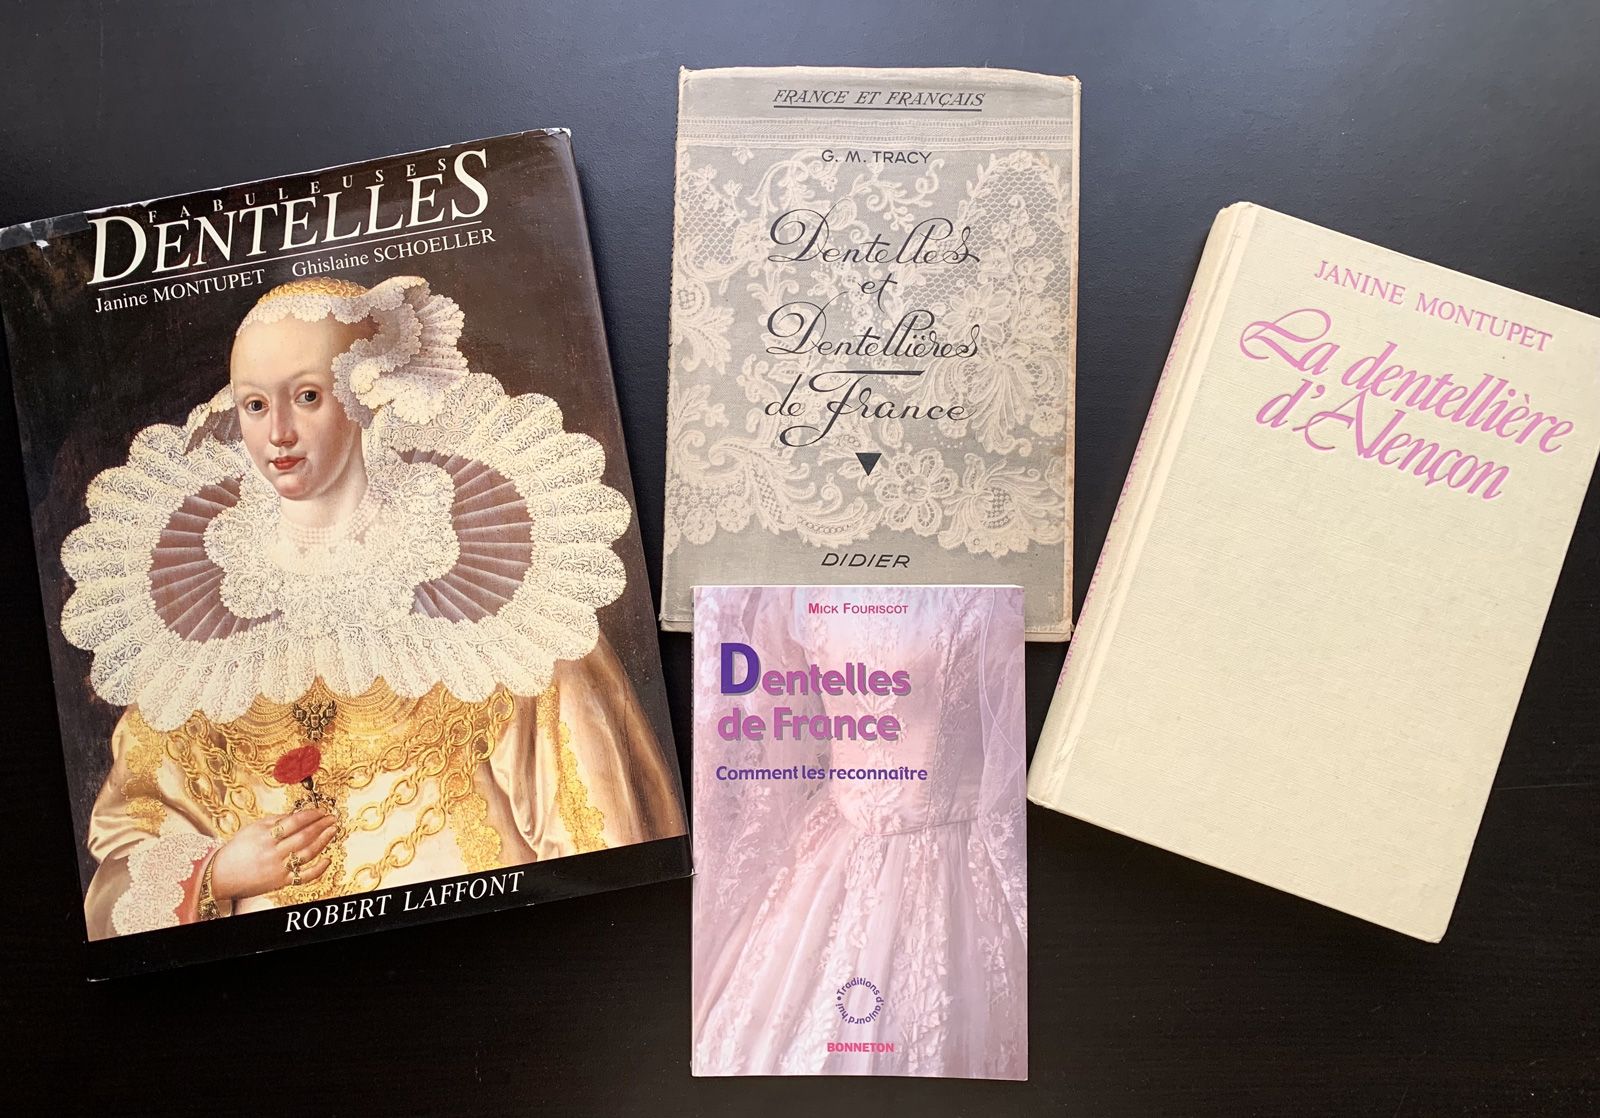 Null 四本关于花边的法文书籍。
Jeanine Montupet女士的两本书《Fabuleuses Dentelles》和《La dentellière d&hellip;